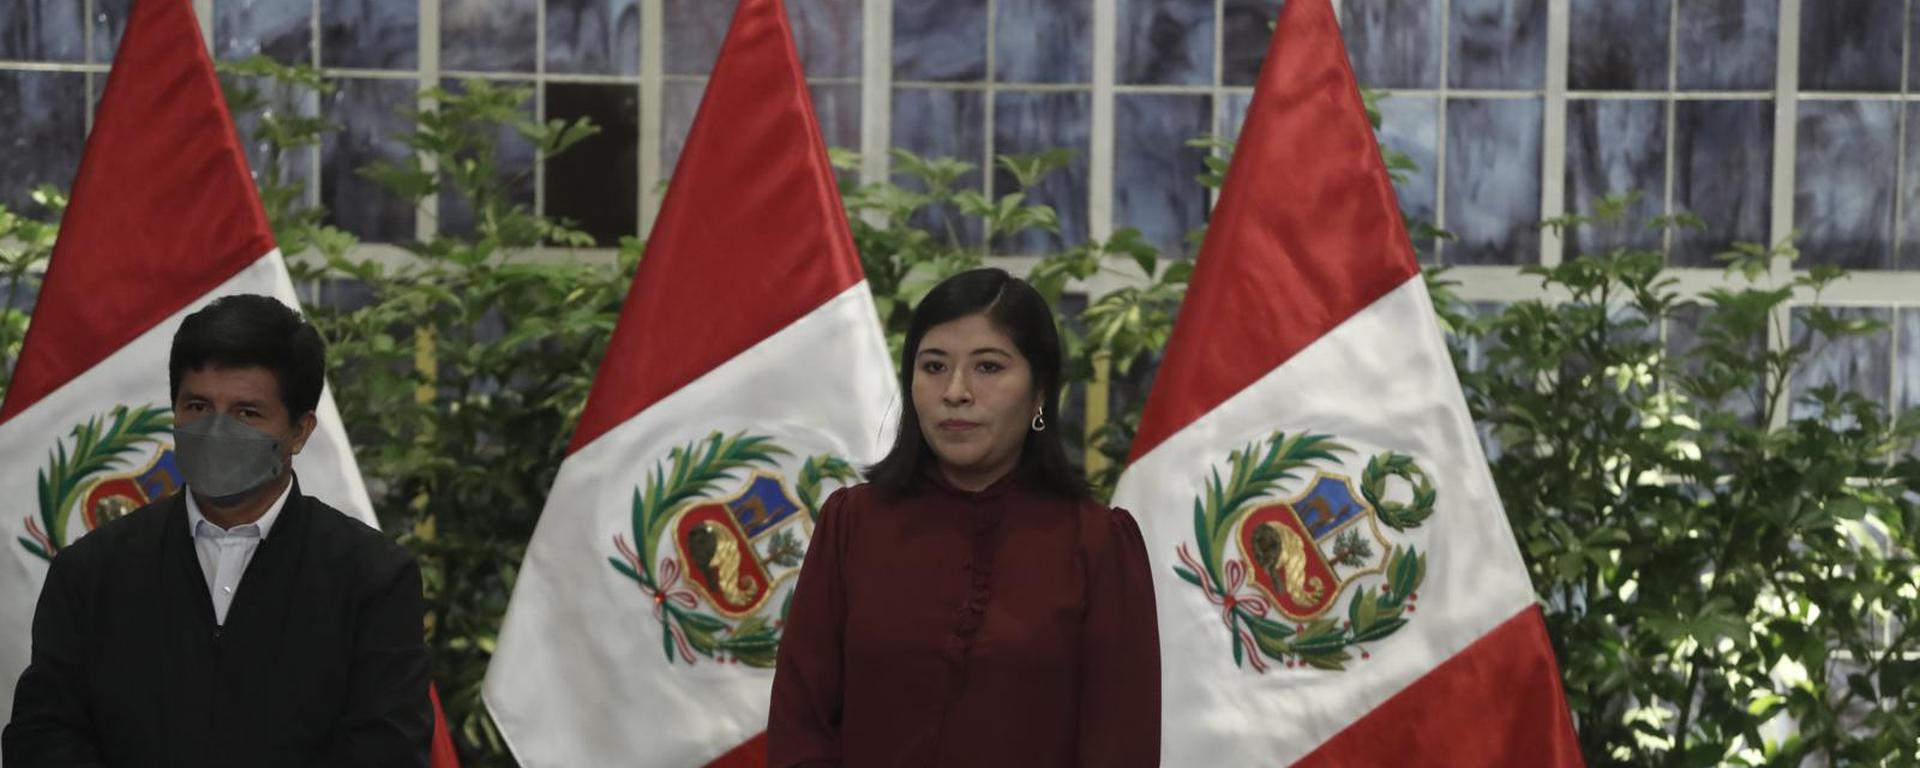 Betssy Chávez bajo investigación: ¿cuáles deben ser los pasos de la fiscalía?